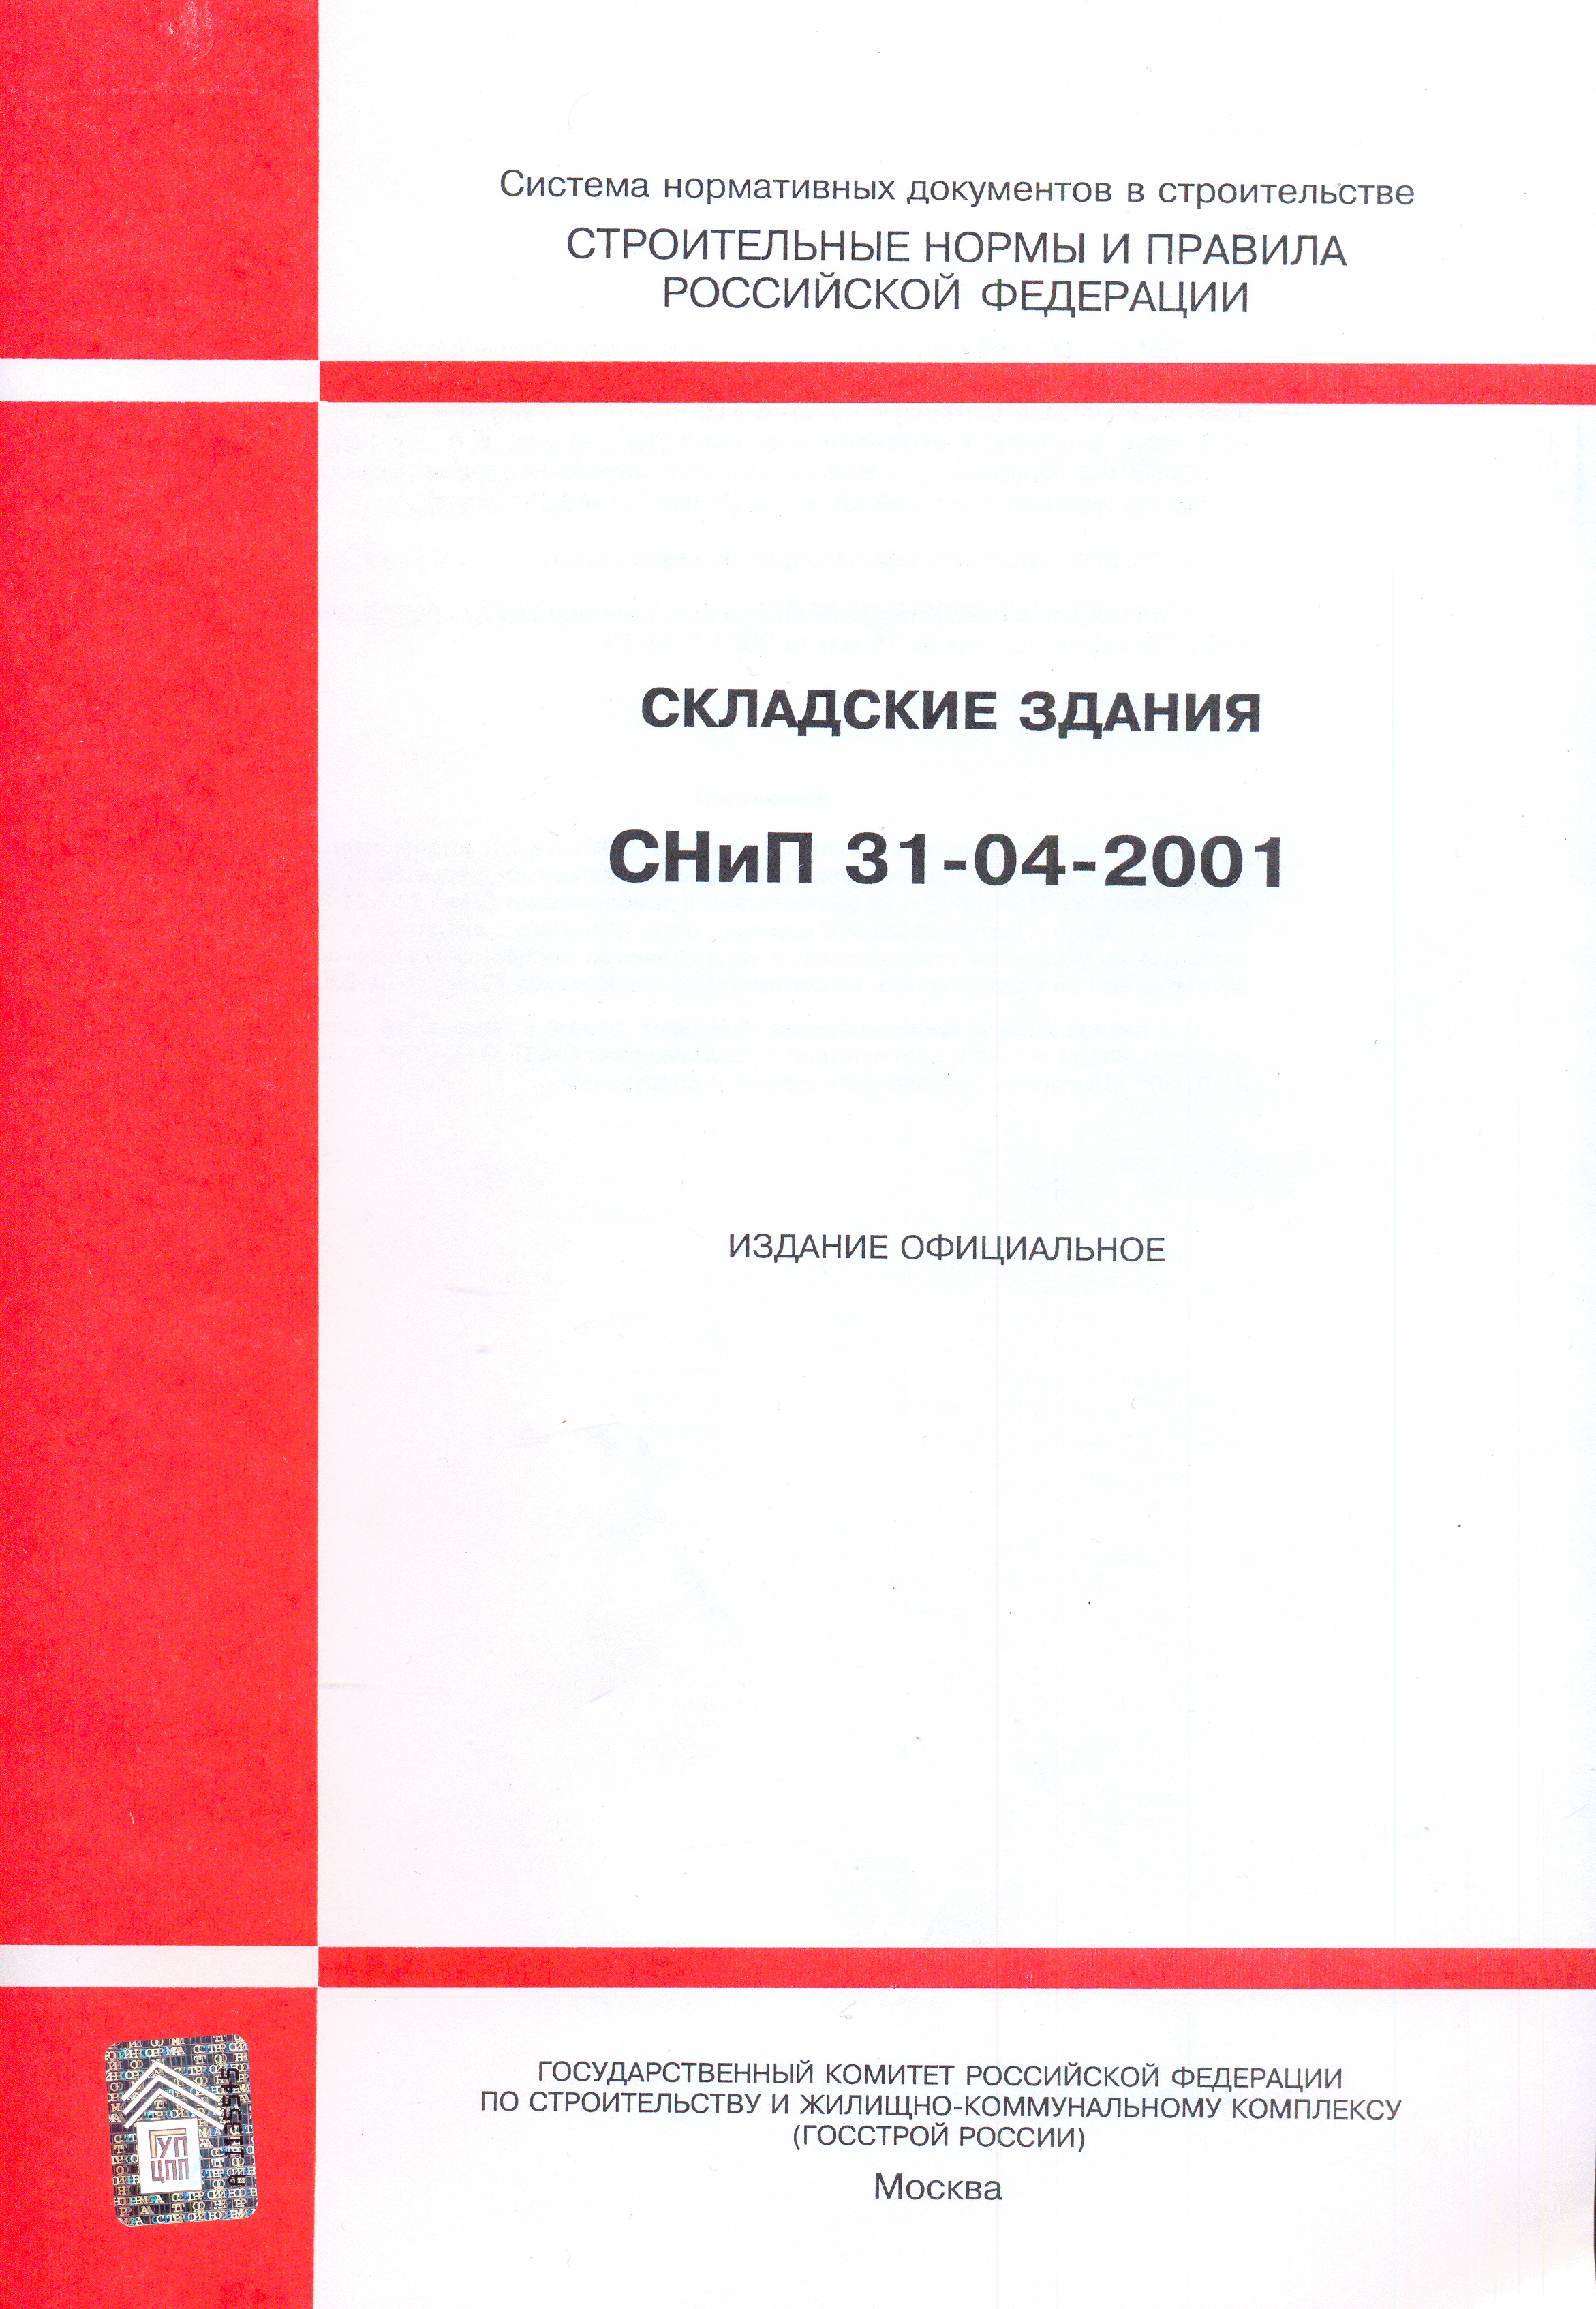 СНиП 31-04-2001